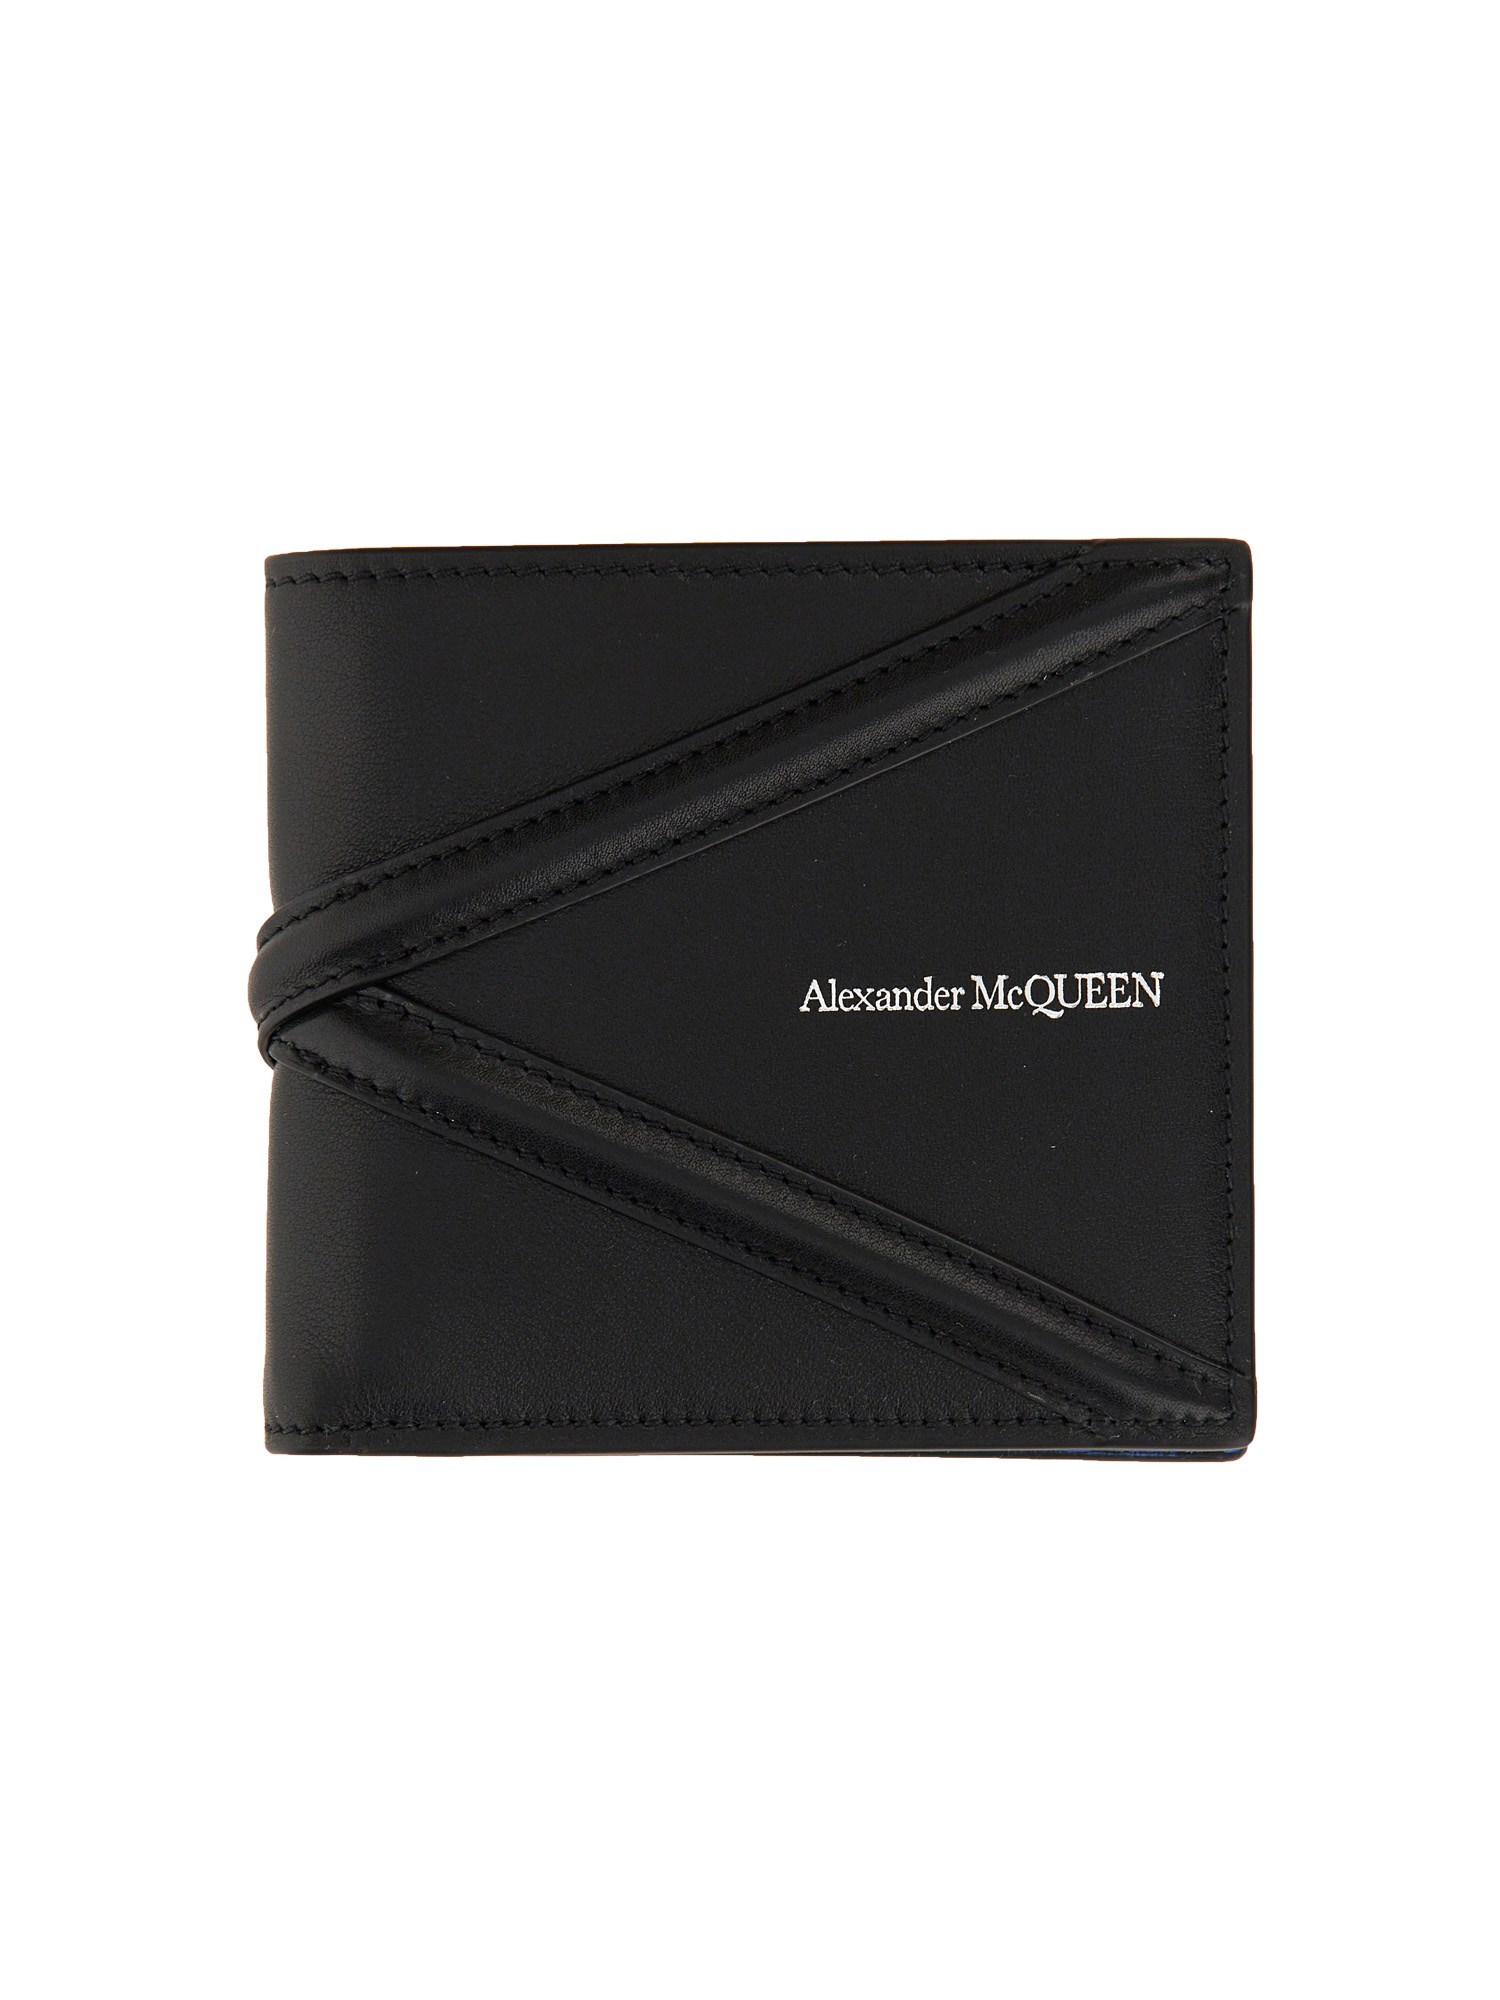 alexander mcqueen harness wallet